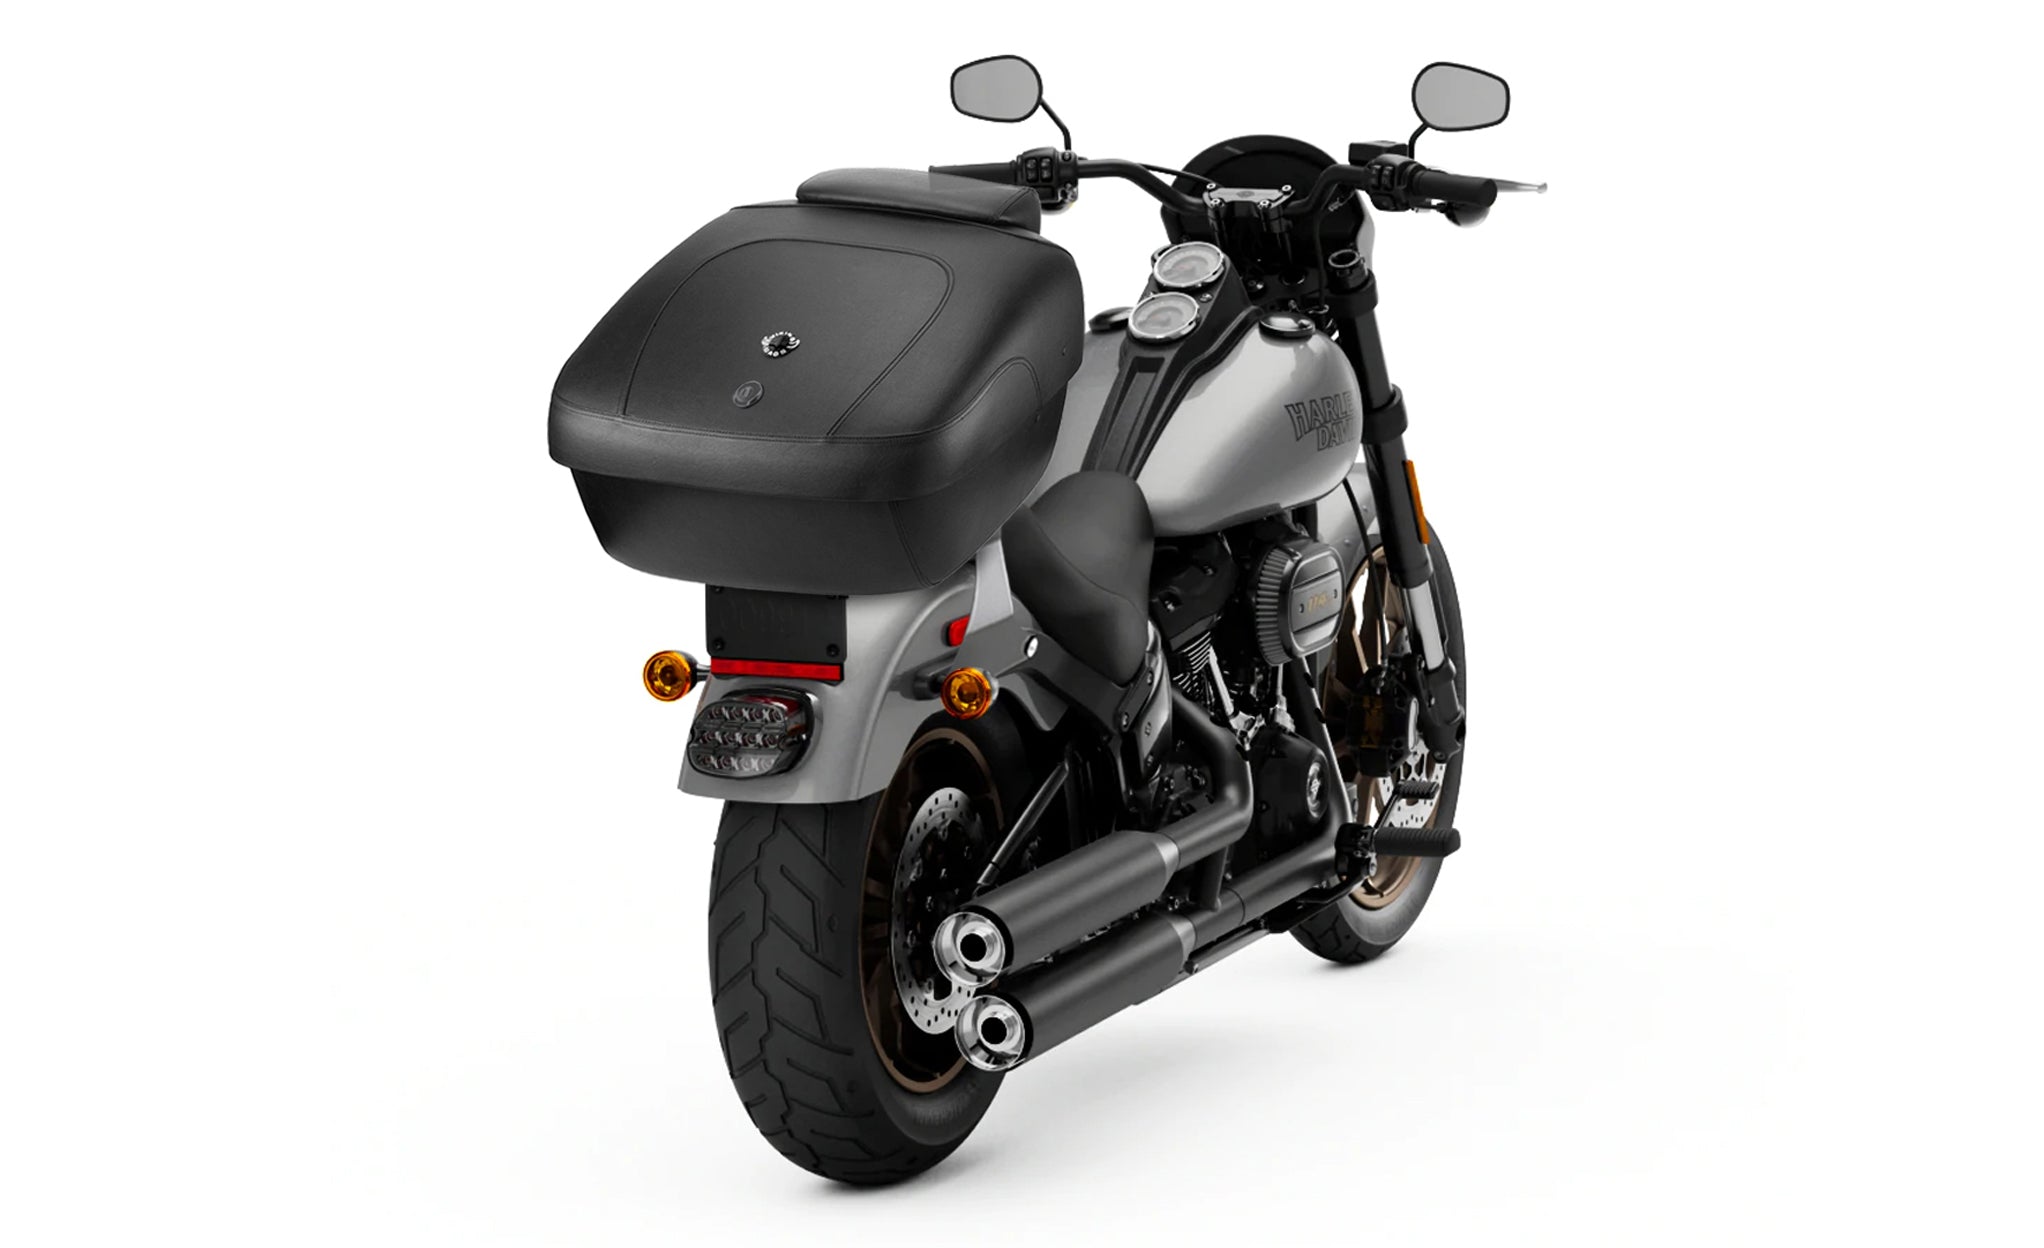 Viking Premium Extra Large Yamaha Leather Wrapped Hard Motorcycle Trunk Bag on Bike View @expand